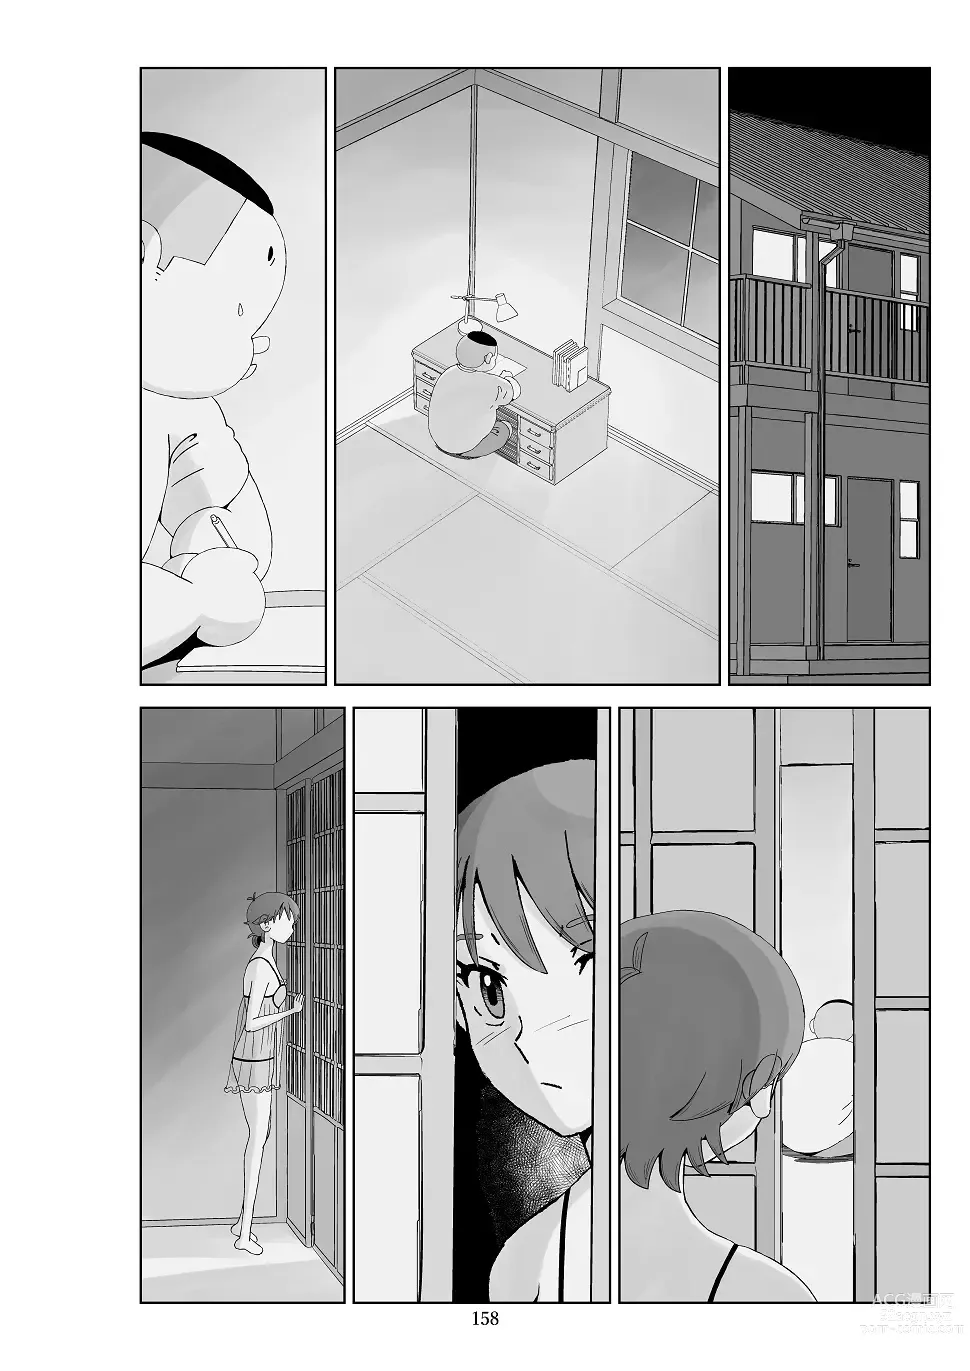 Page 159 of doujinshi Futoshi 3